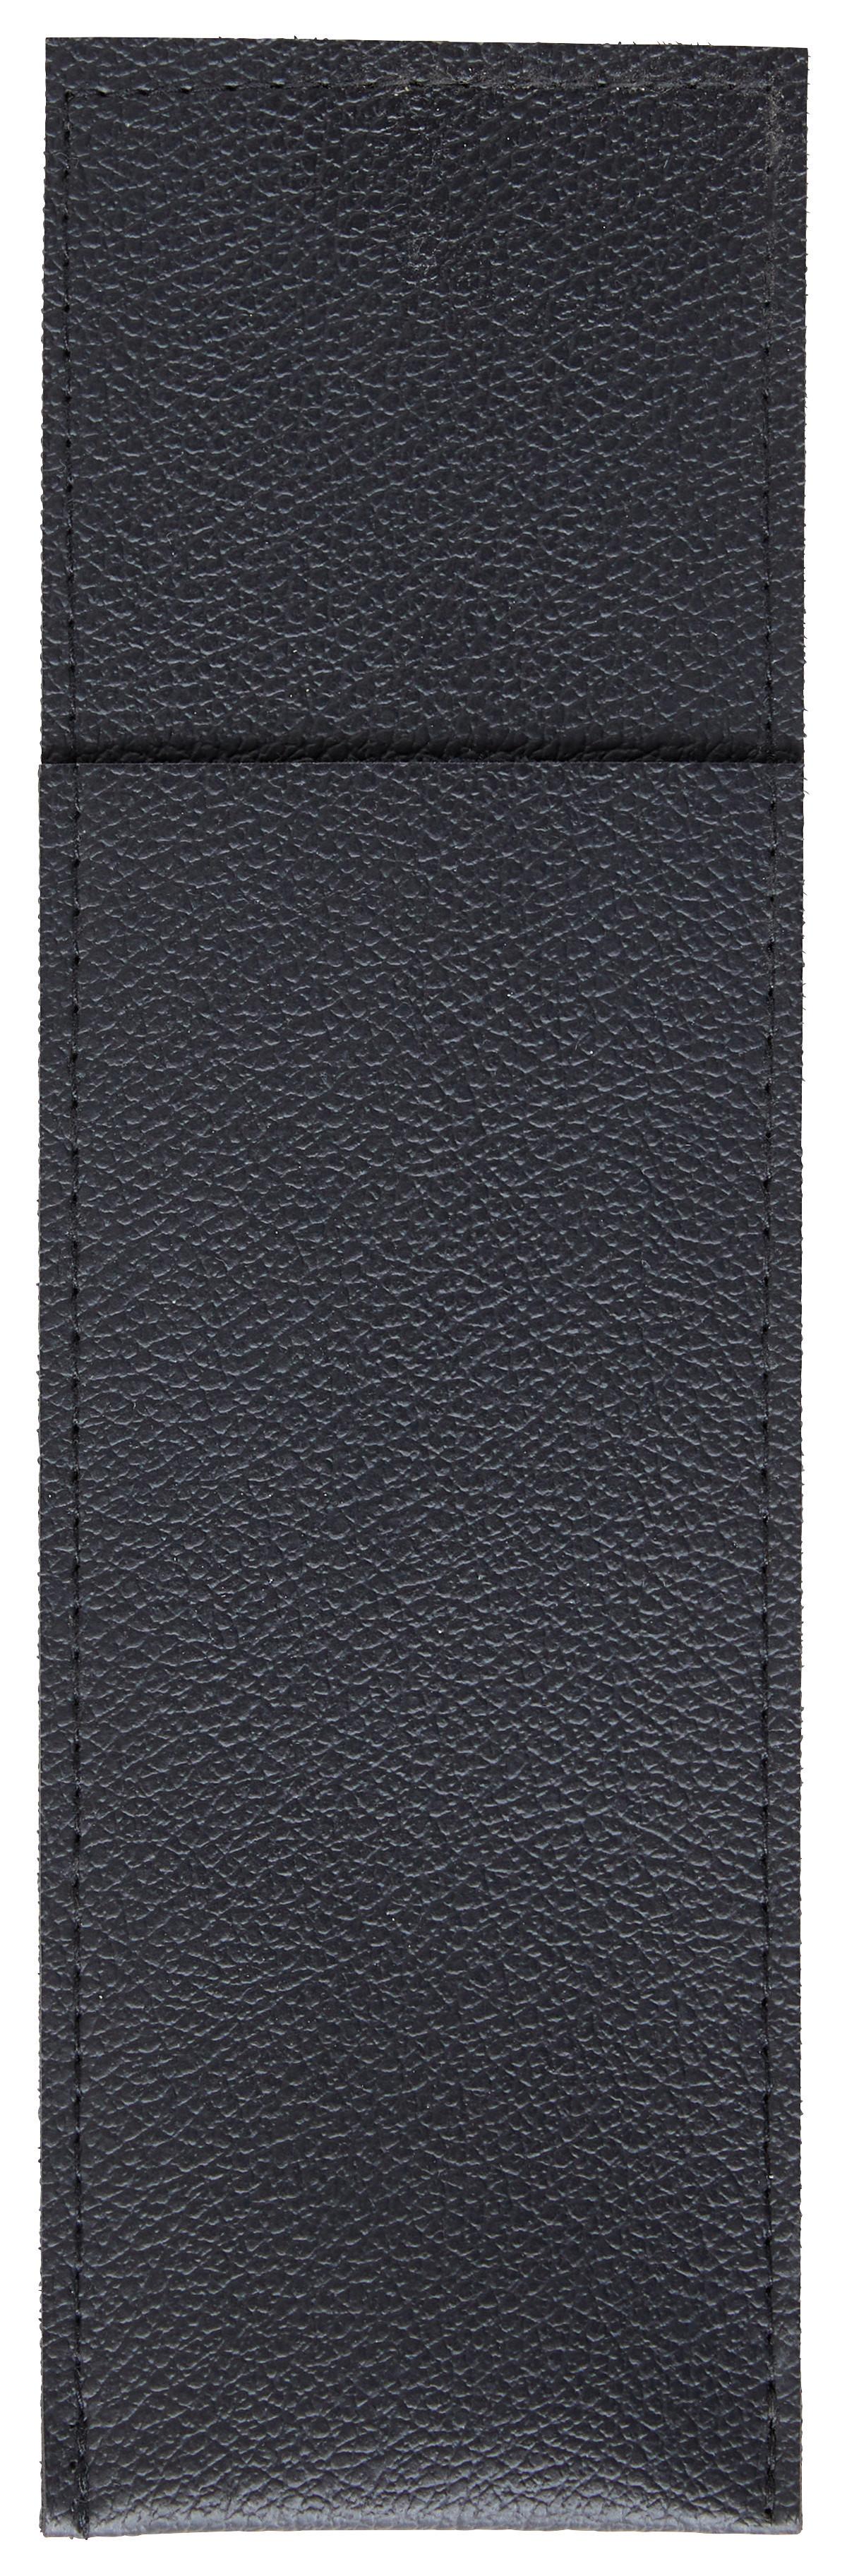 Evőeszköztartó Zseb Diego - Barna/Fekete, modern, Textil (26.5/8.2cm)